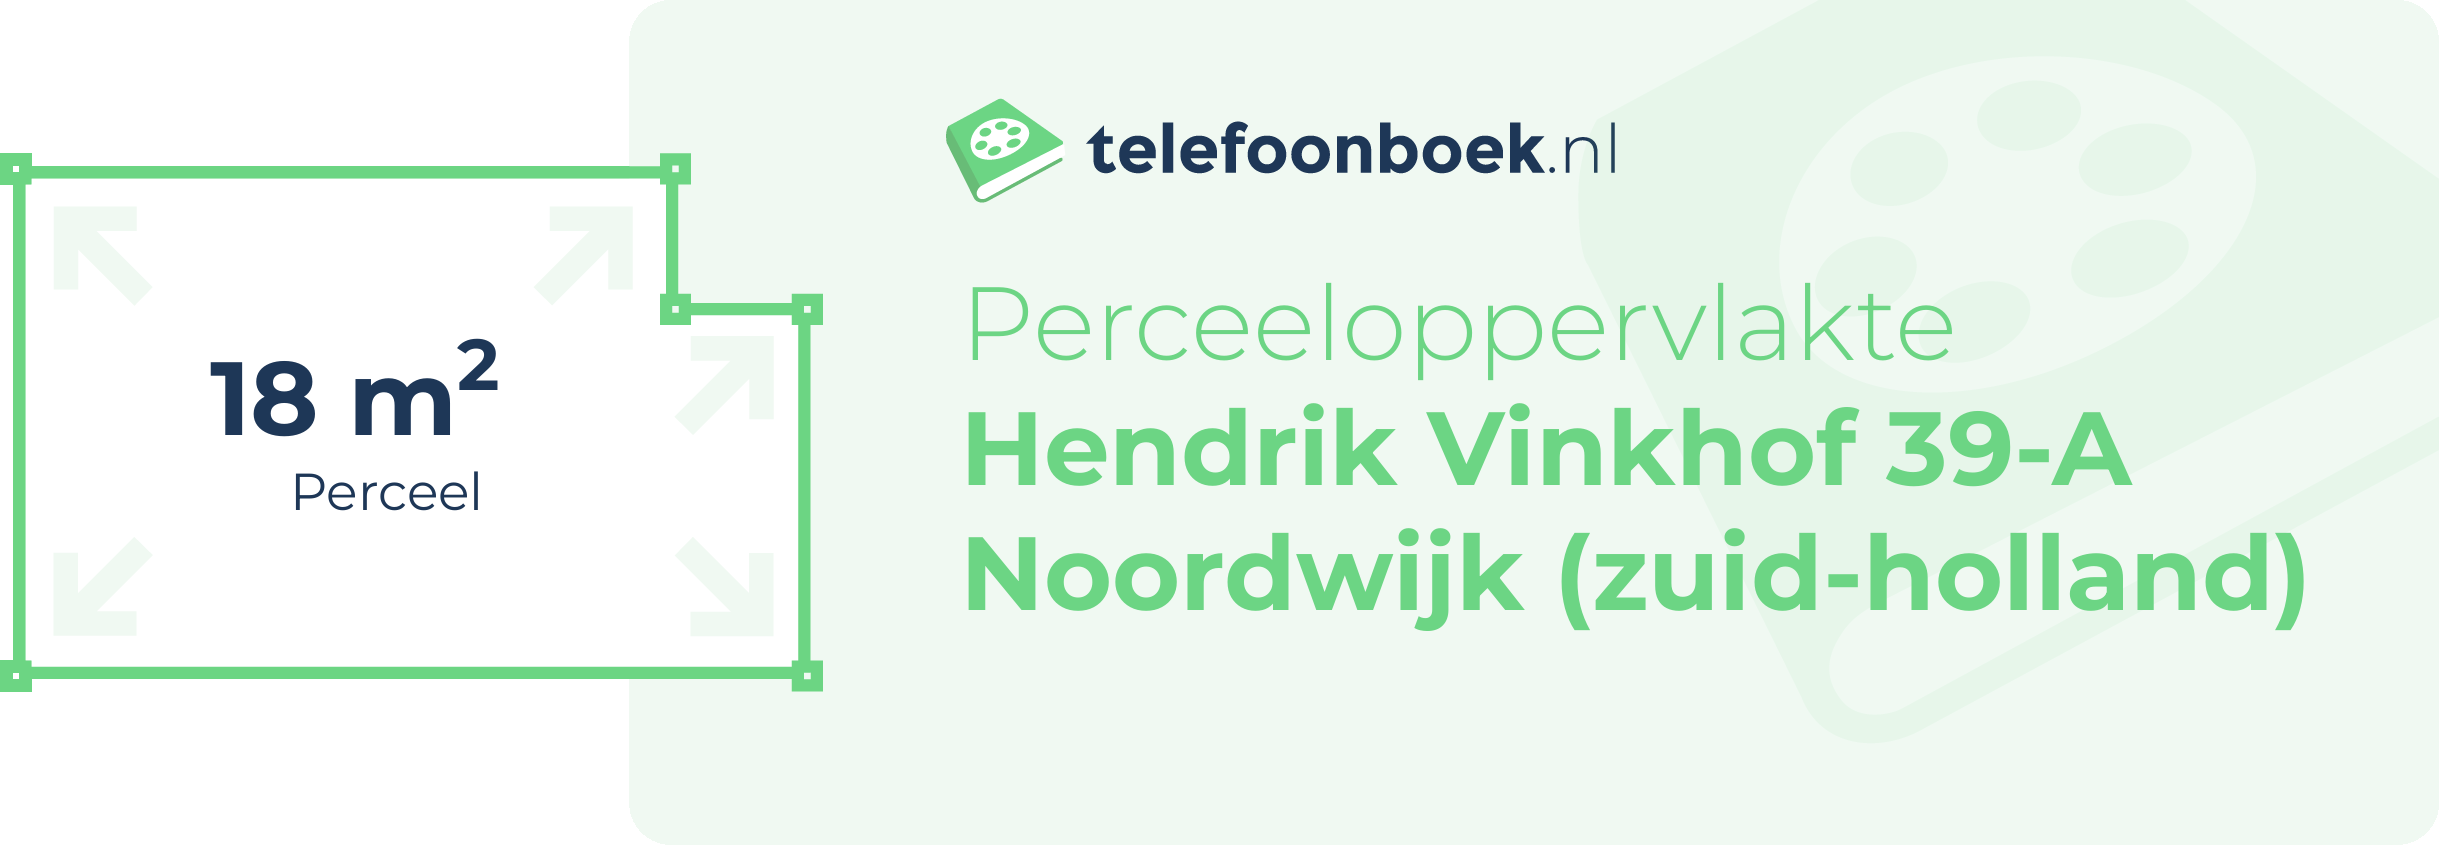 Perceeloppervlakte Hendrik Vinkhof 39-A Noordwijk (Zuid-Holland)